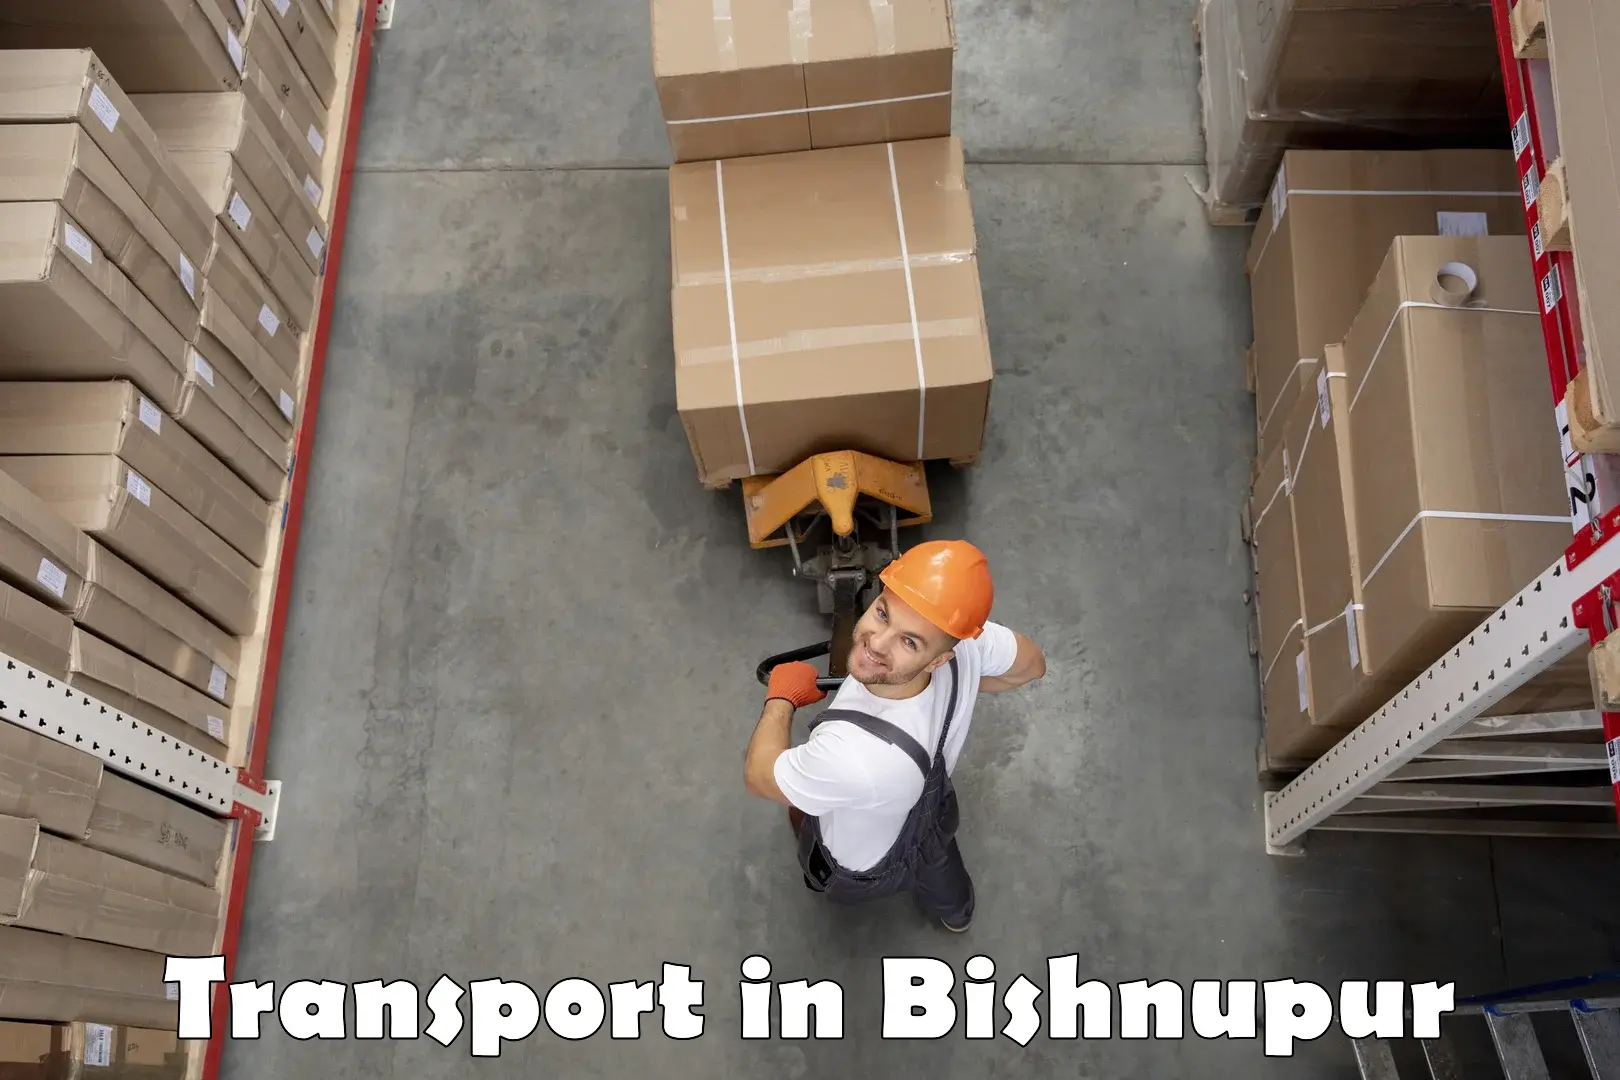 Interstate transport services in Bishnupur